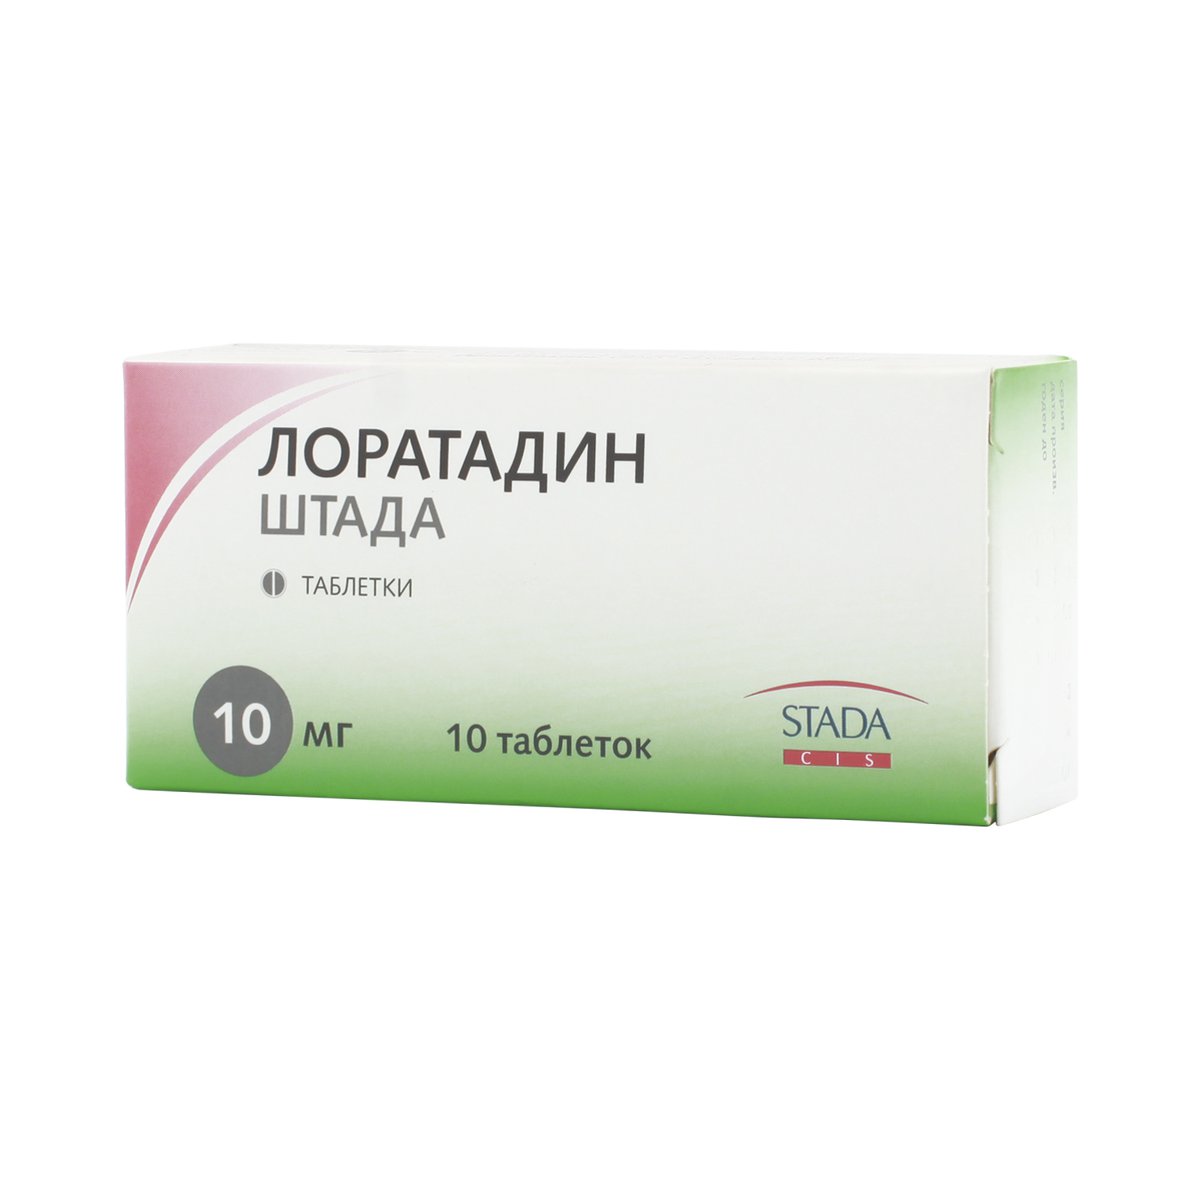 Лоратадин Штада (таблетки, 10 шт, 10 мг, для приема внутрь) - цена .